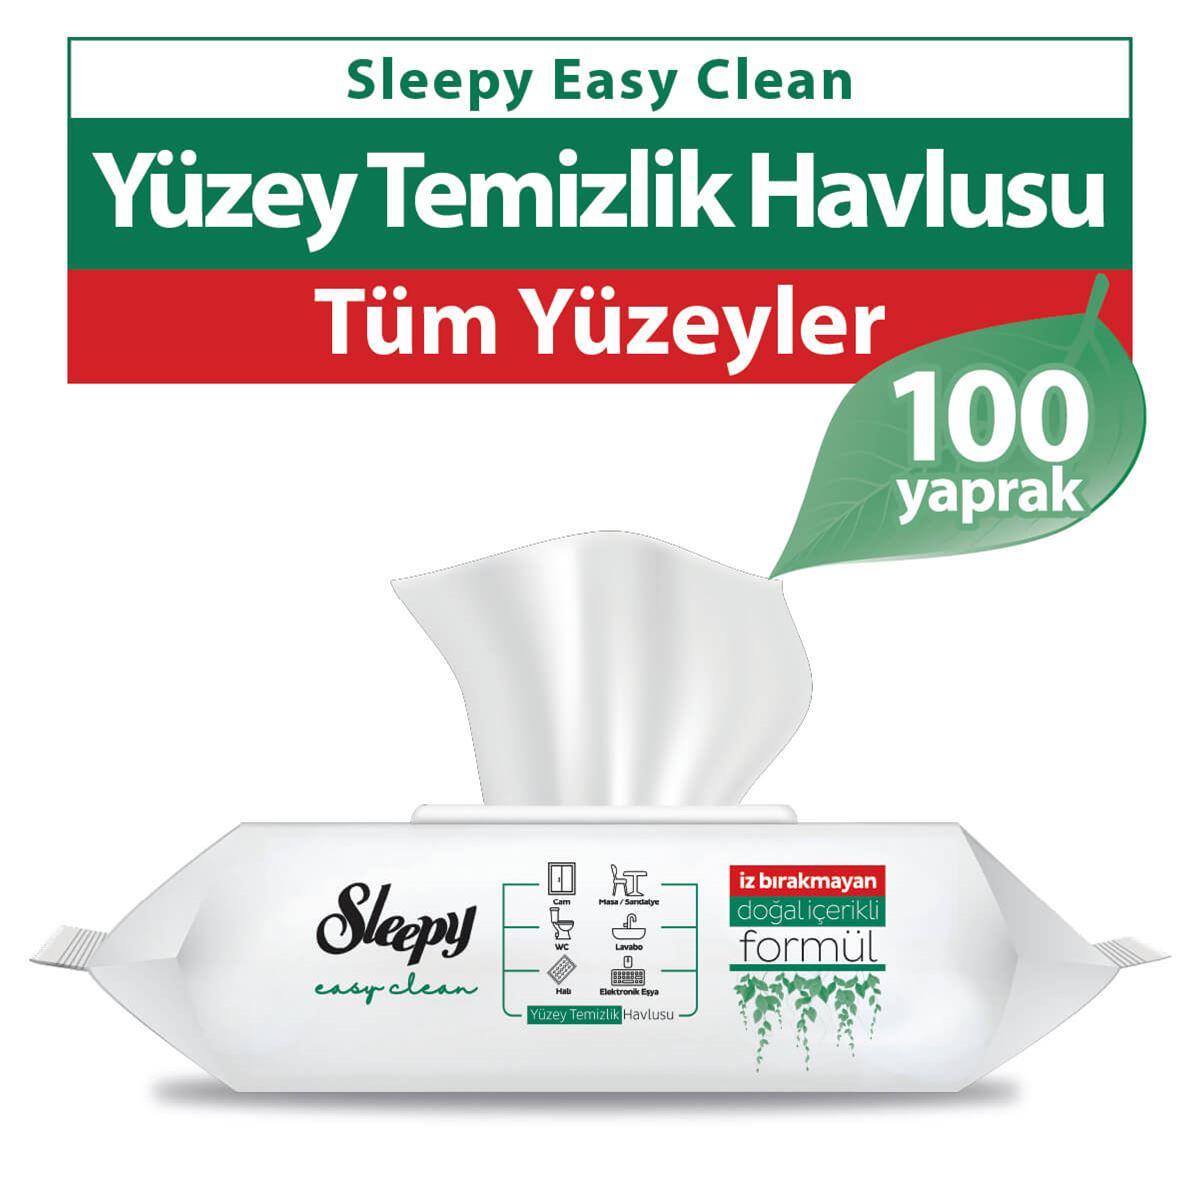 Sleepy Easy Clean Yüzey Temizlik Havlusu 100 Yaprak 9 Paket